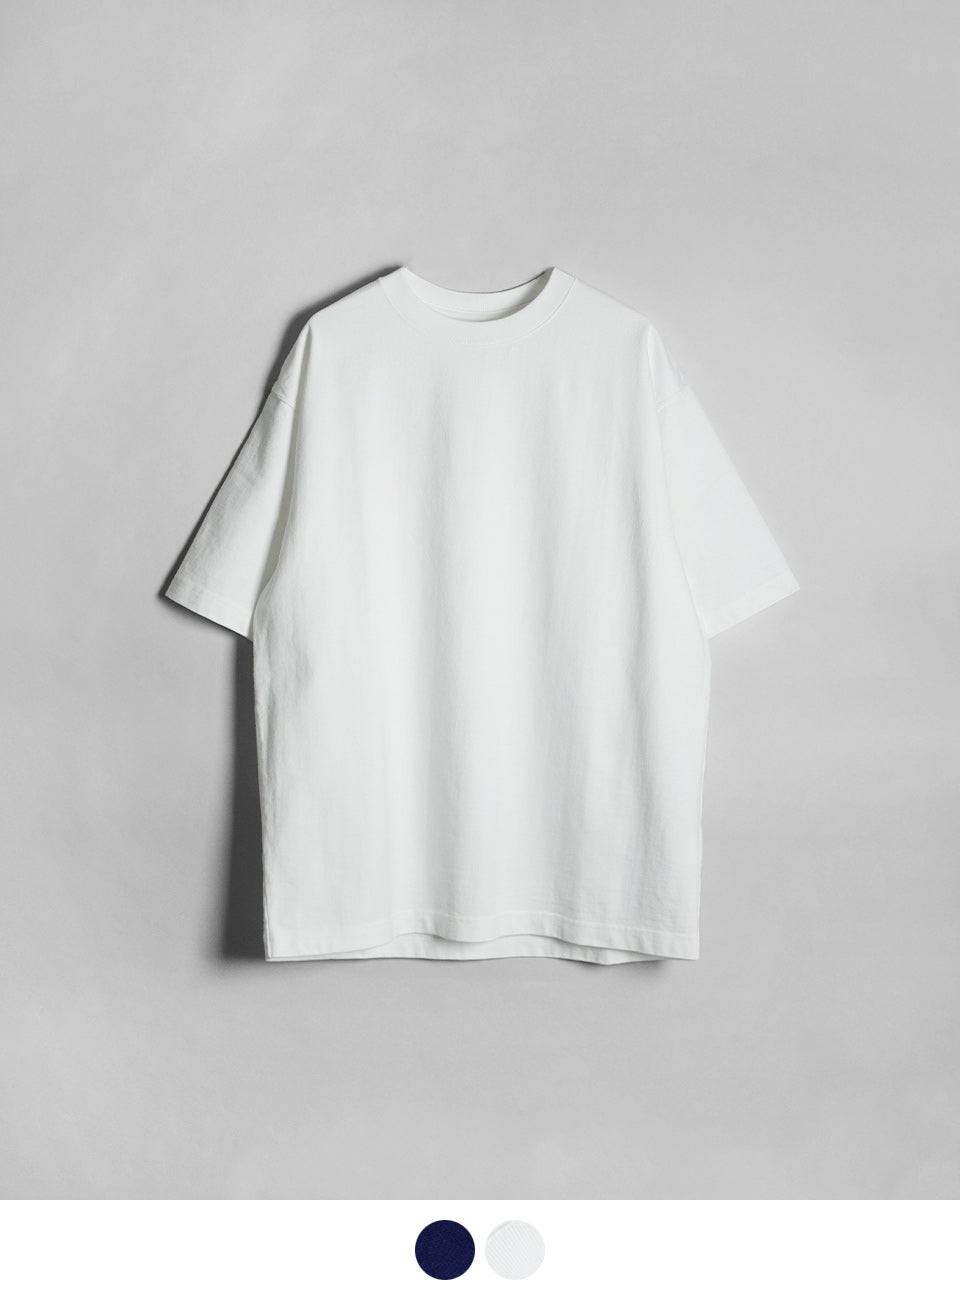 CIOTA シオタ ショートスリーブ Tシャツ Short Sleeve T-shirt CSLM-141 【送料無料】正規取扱店